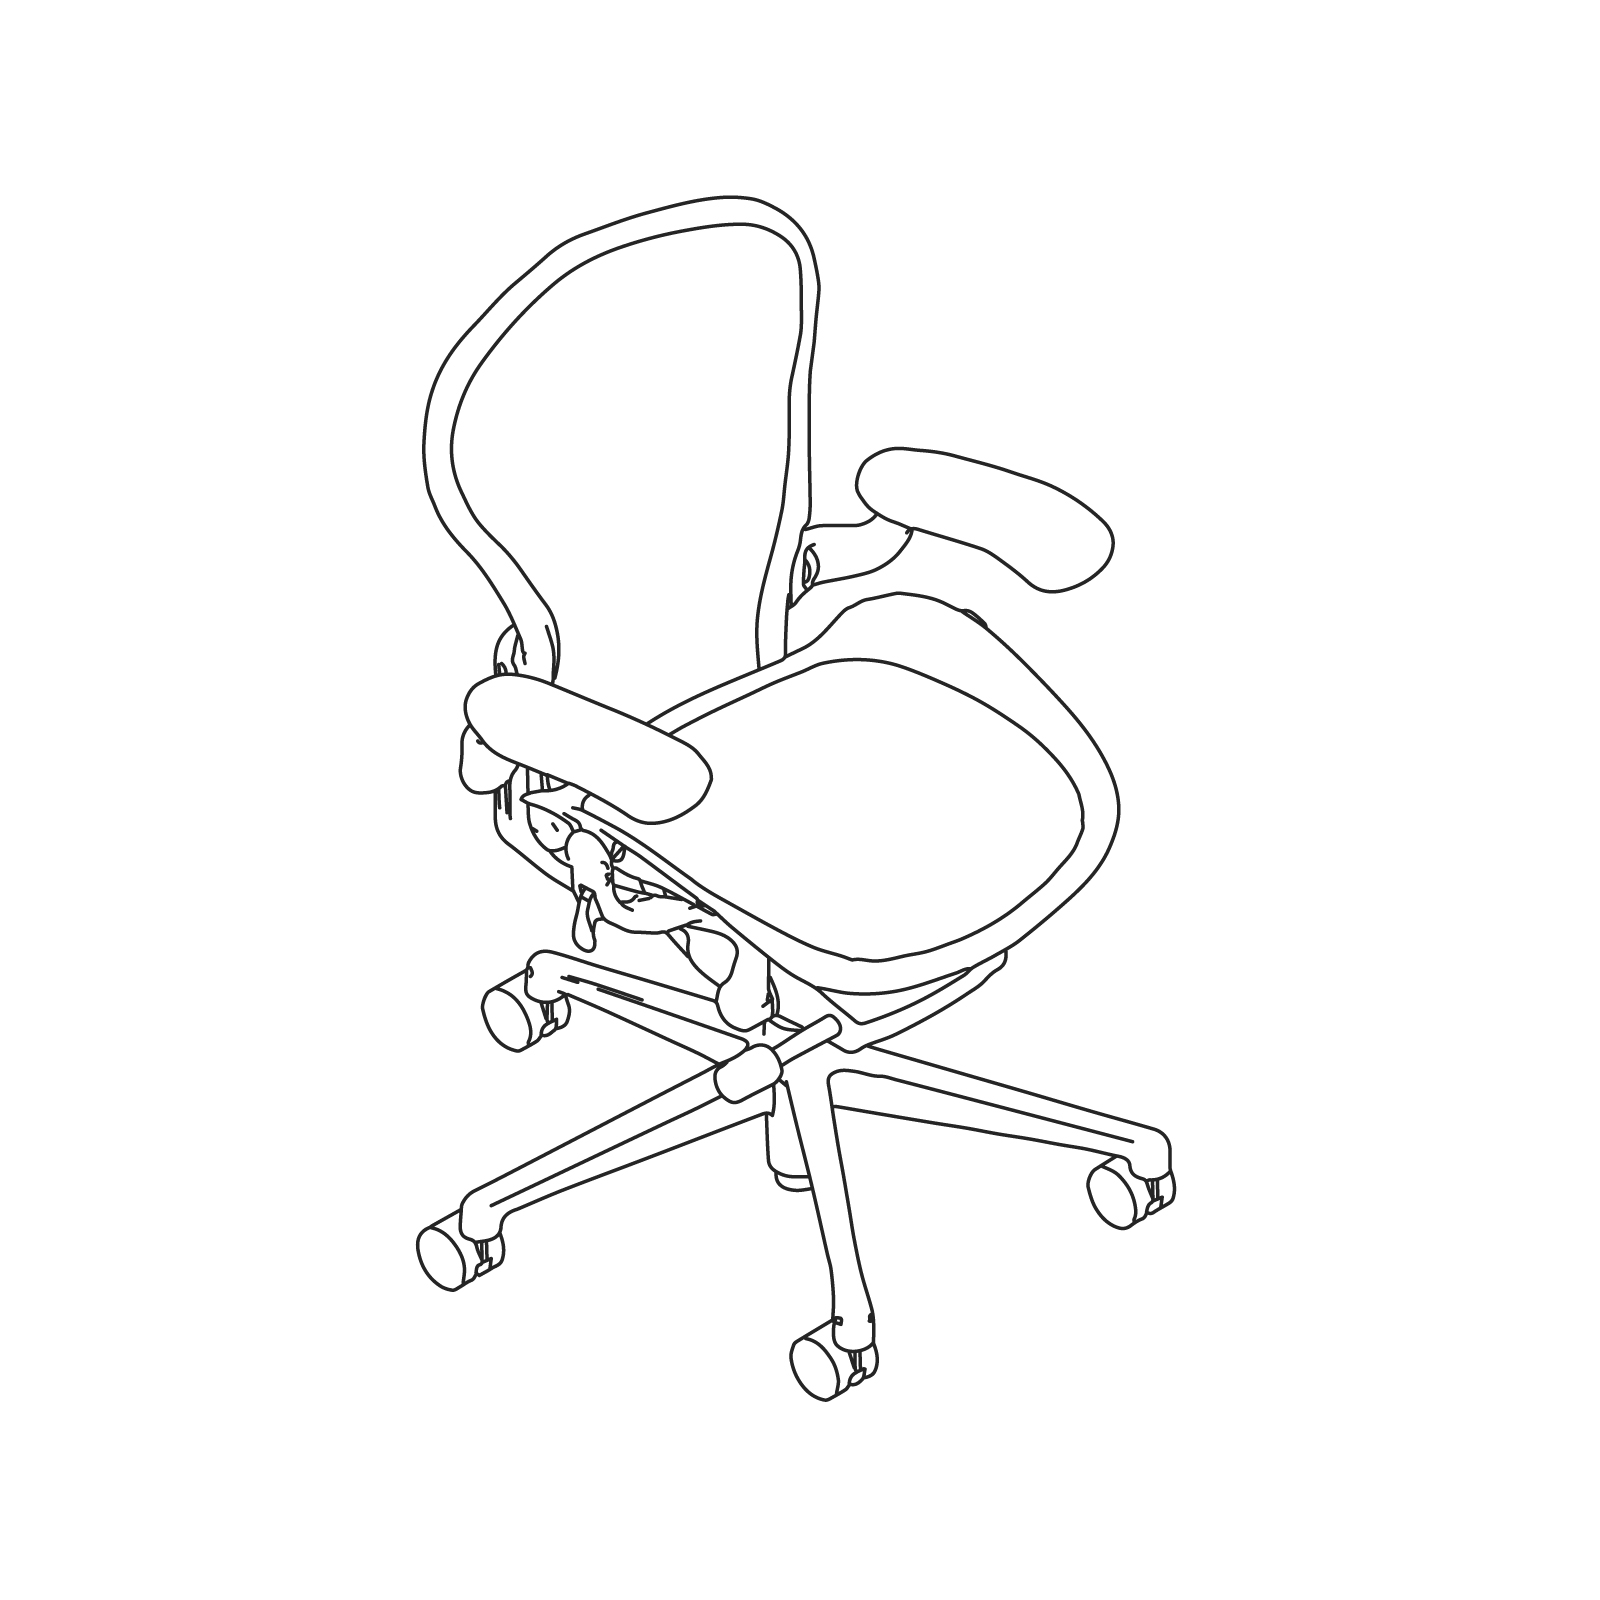 线描图 - Aeron座椅–A款–完全可调式扶手